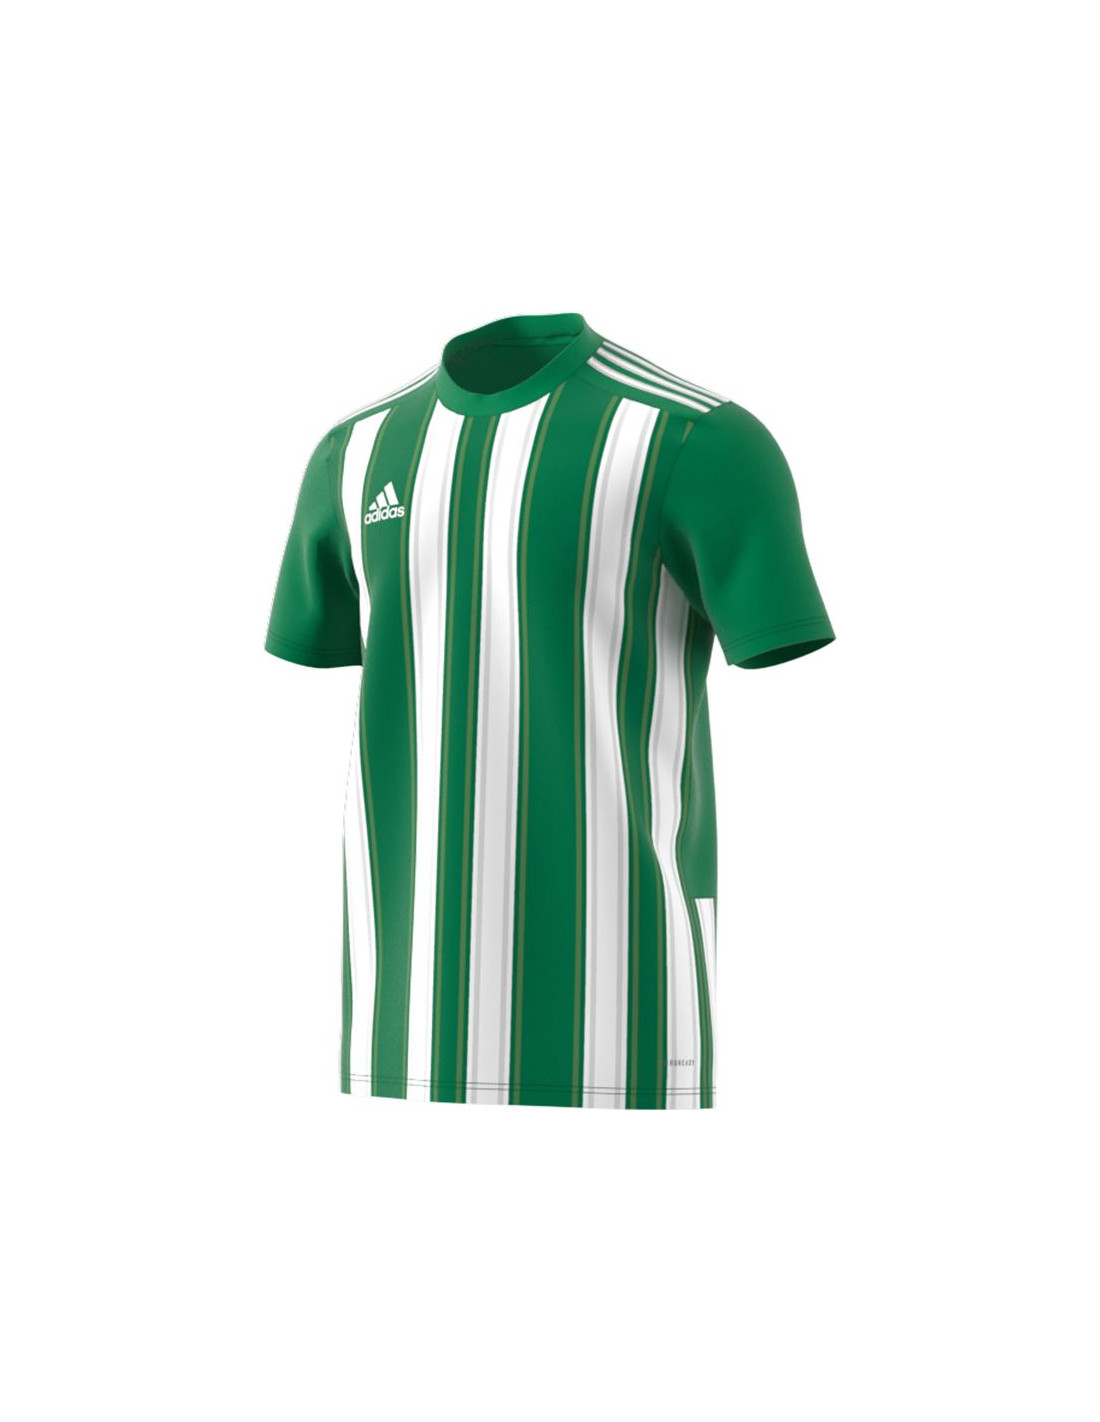 Camiseta de fútbol adidas striped 21 m green/white